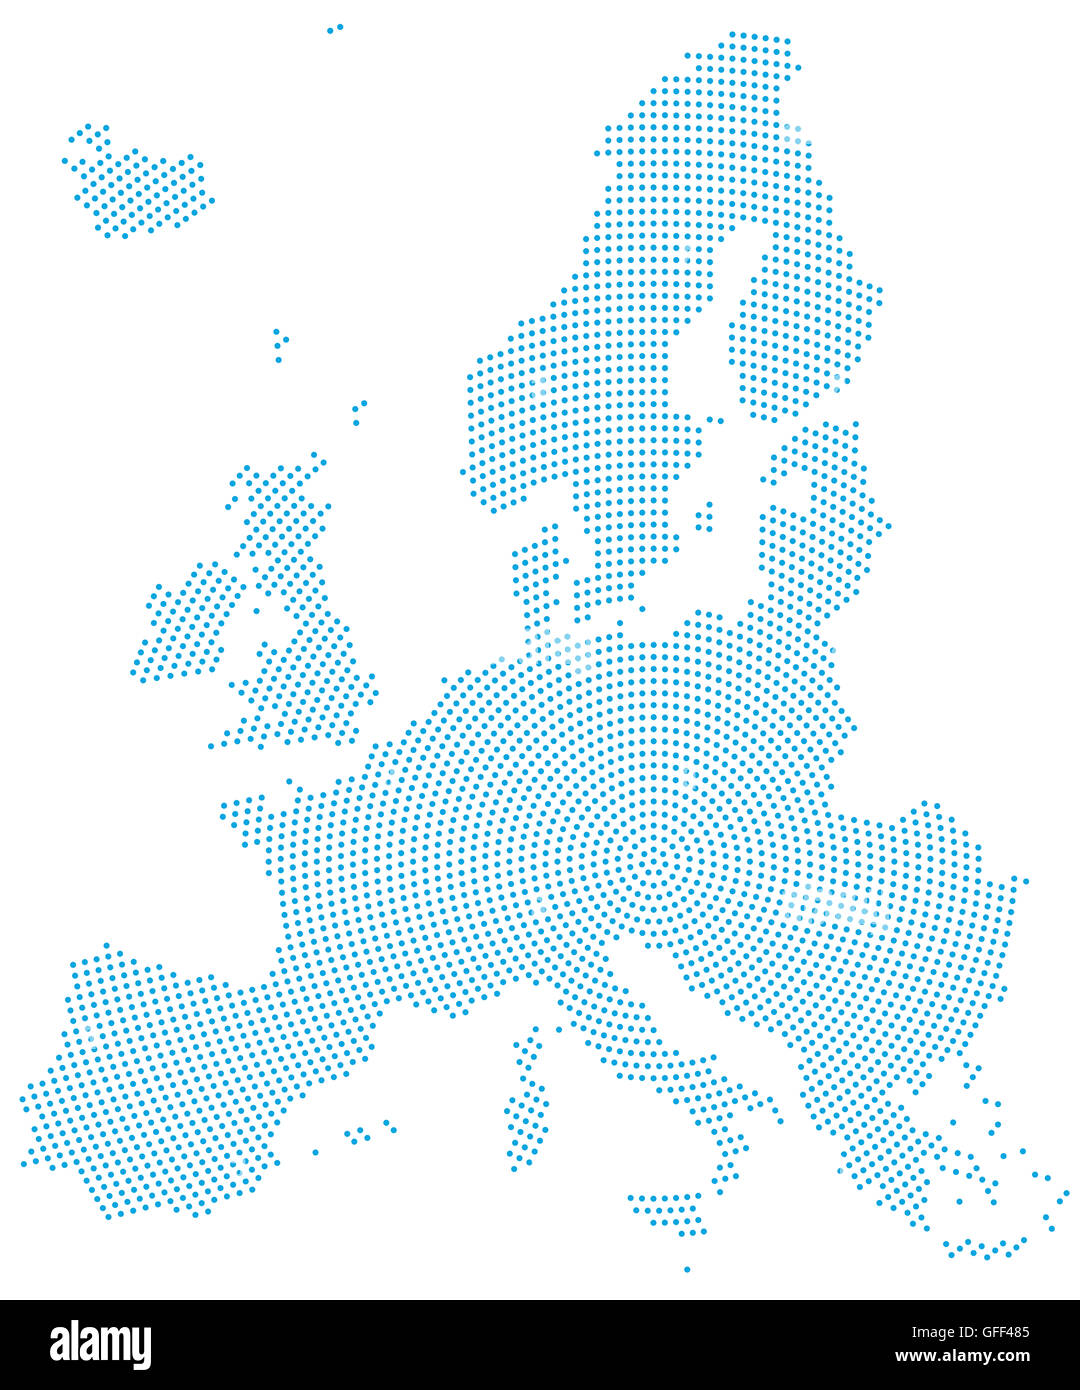 Mapa de Europa patrón de puntos radiales. Los puntos azules que va desde el centro hacia afuera y forman la silueta de la Unión. Foto de stock